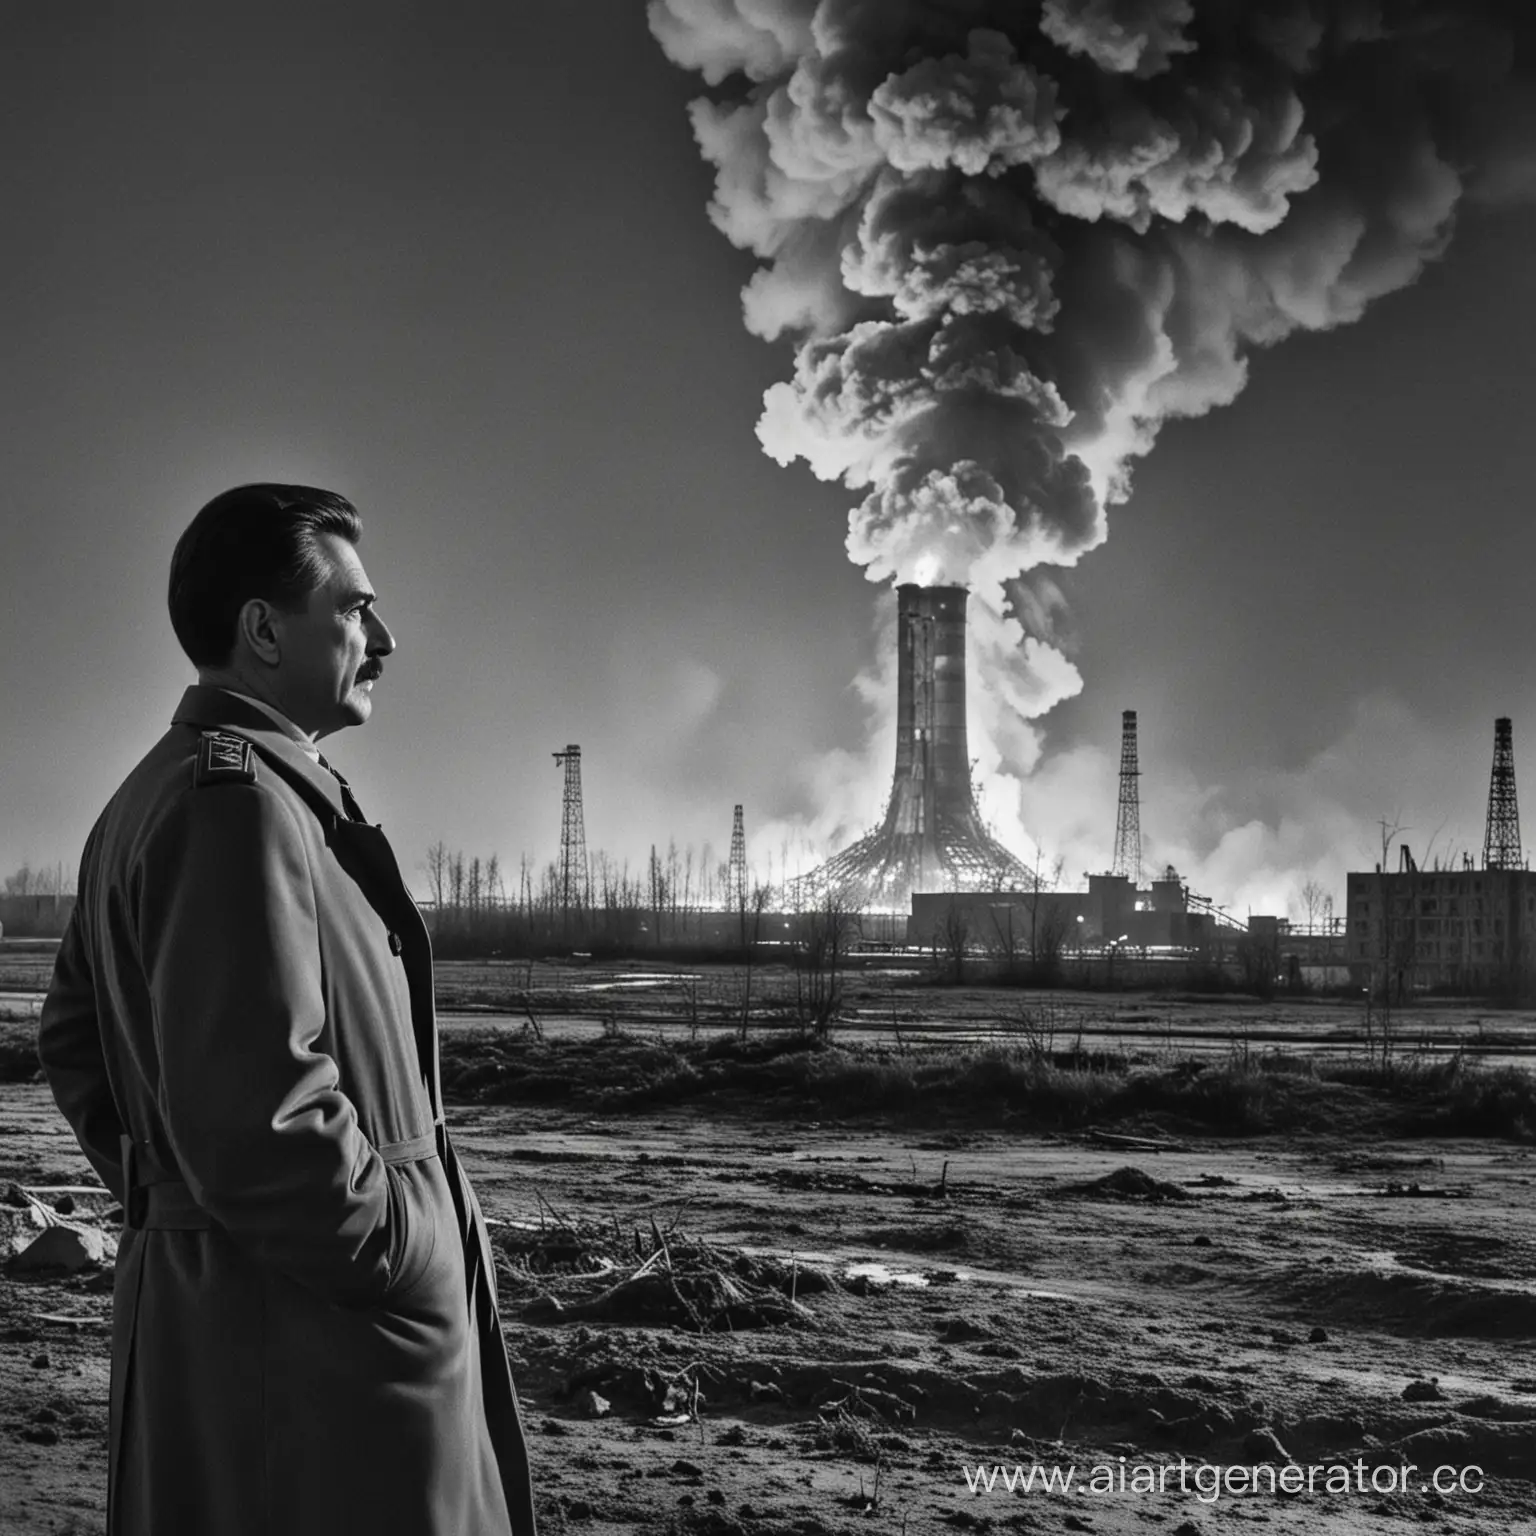 Сталин смотрит на горящий реактор в чернобыле